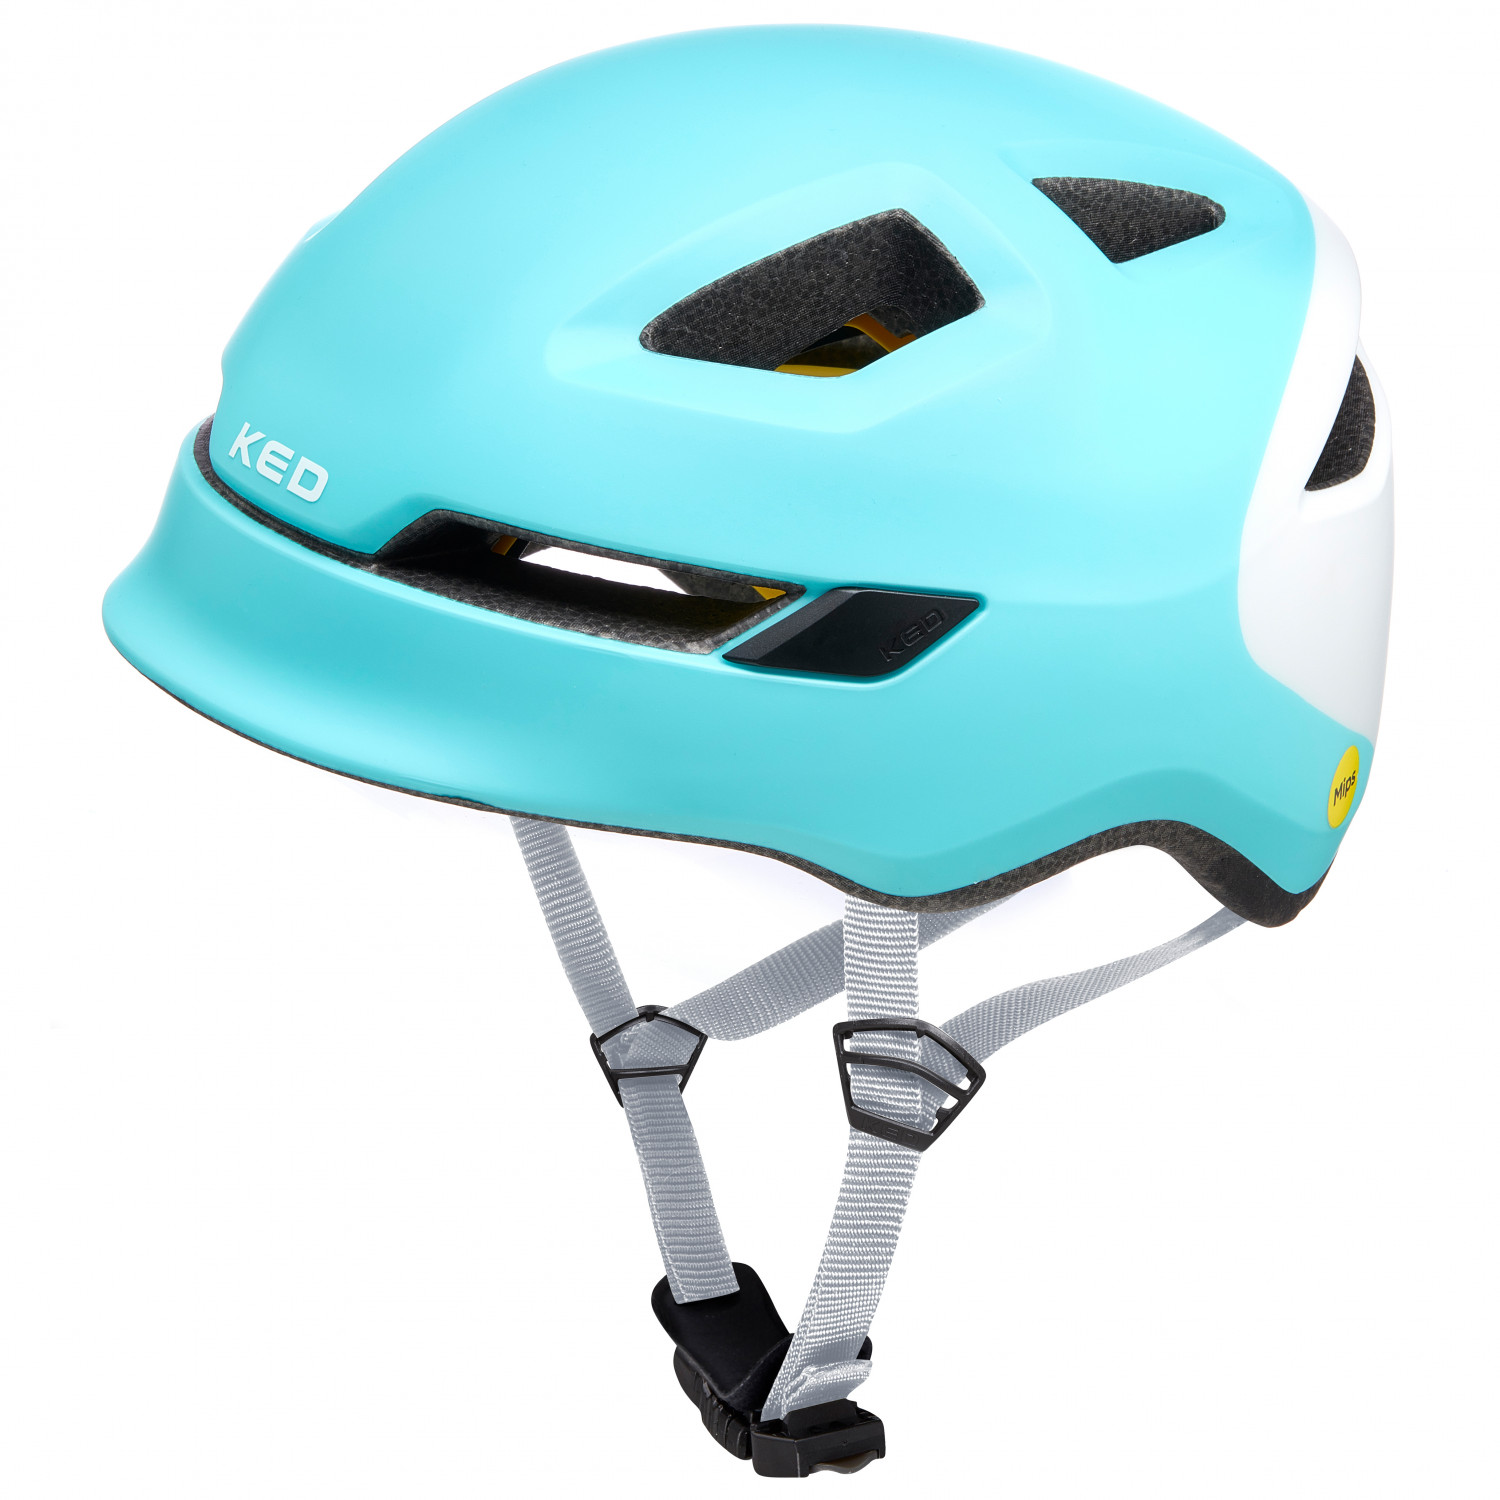 Велосипедный шлем Ked Kid's Pop, цвет Iceblue/White